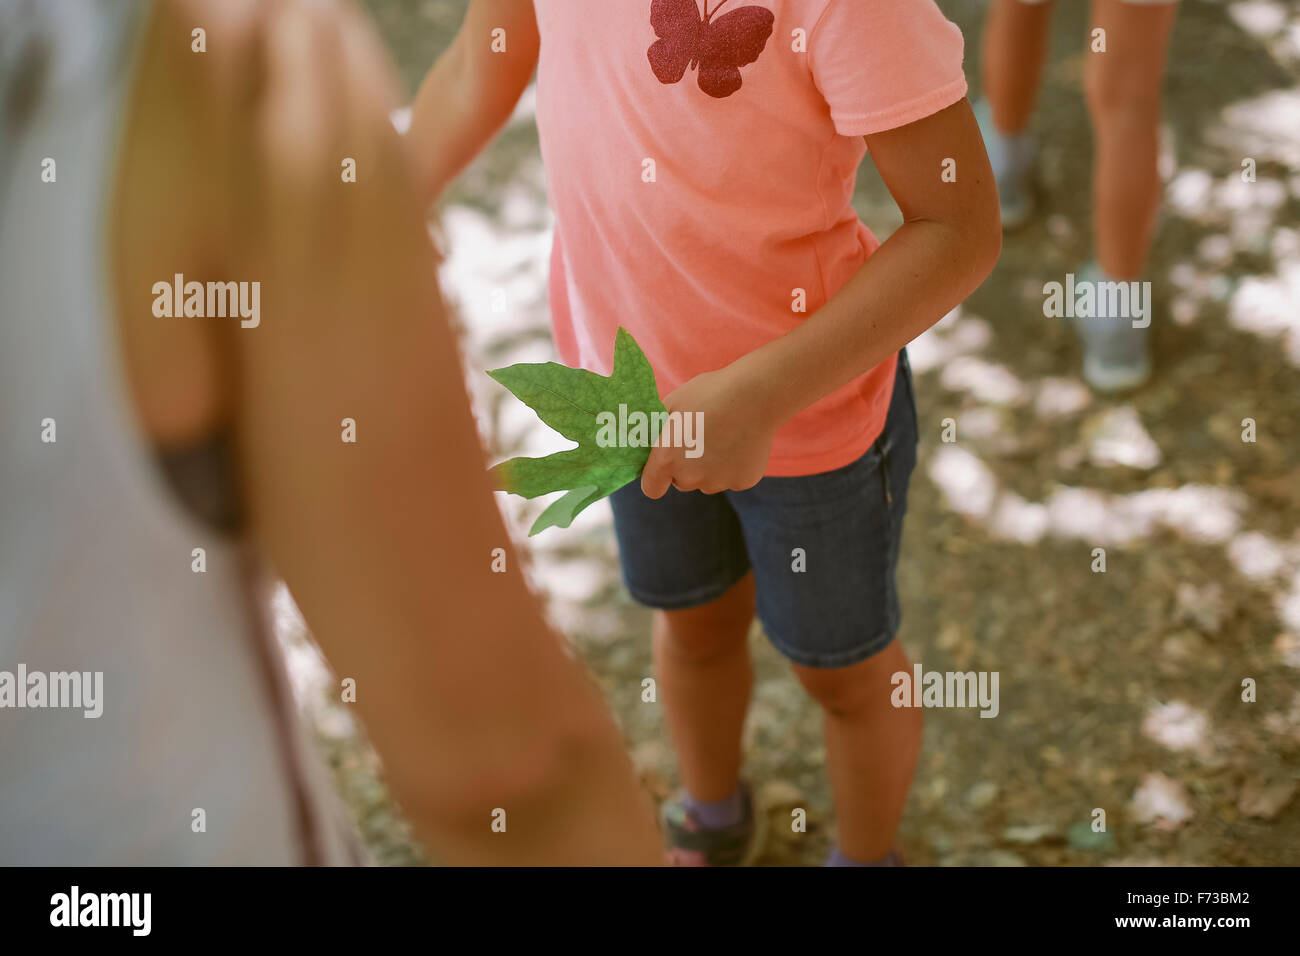 Eine Person steht mit einem grünen Blatt der Ahornbaum an seiner linken Hand. Stockfoto